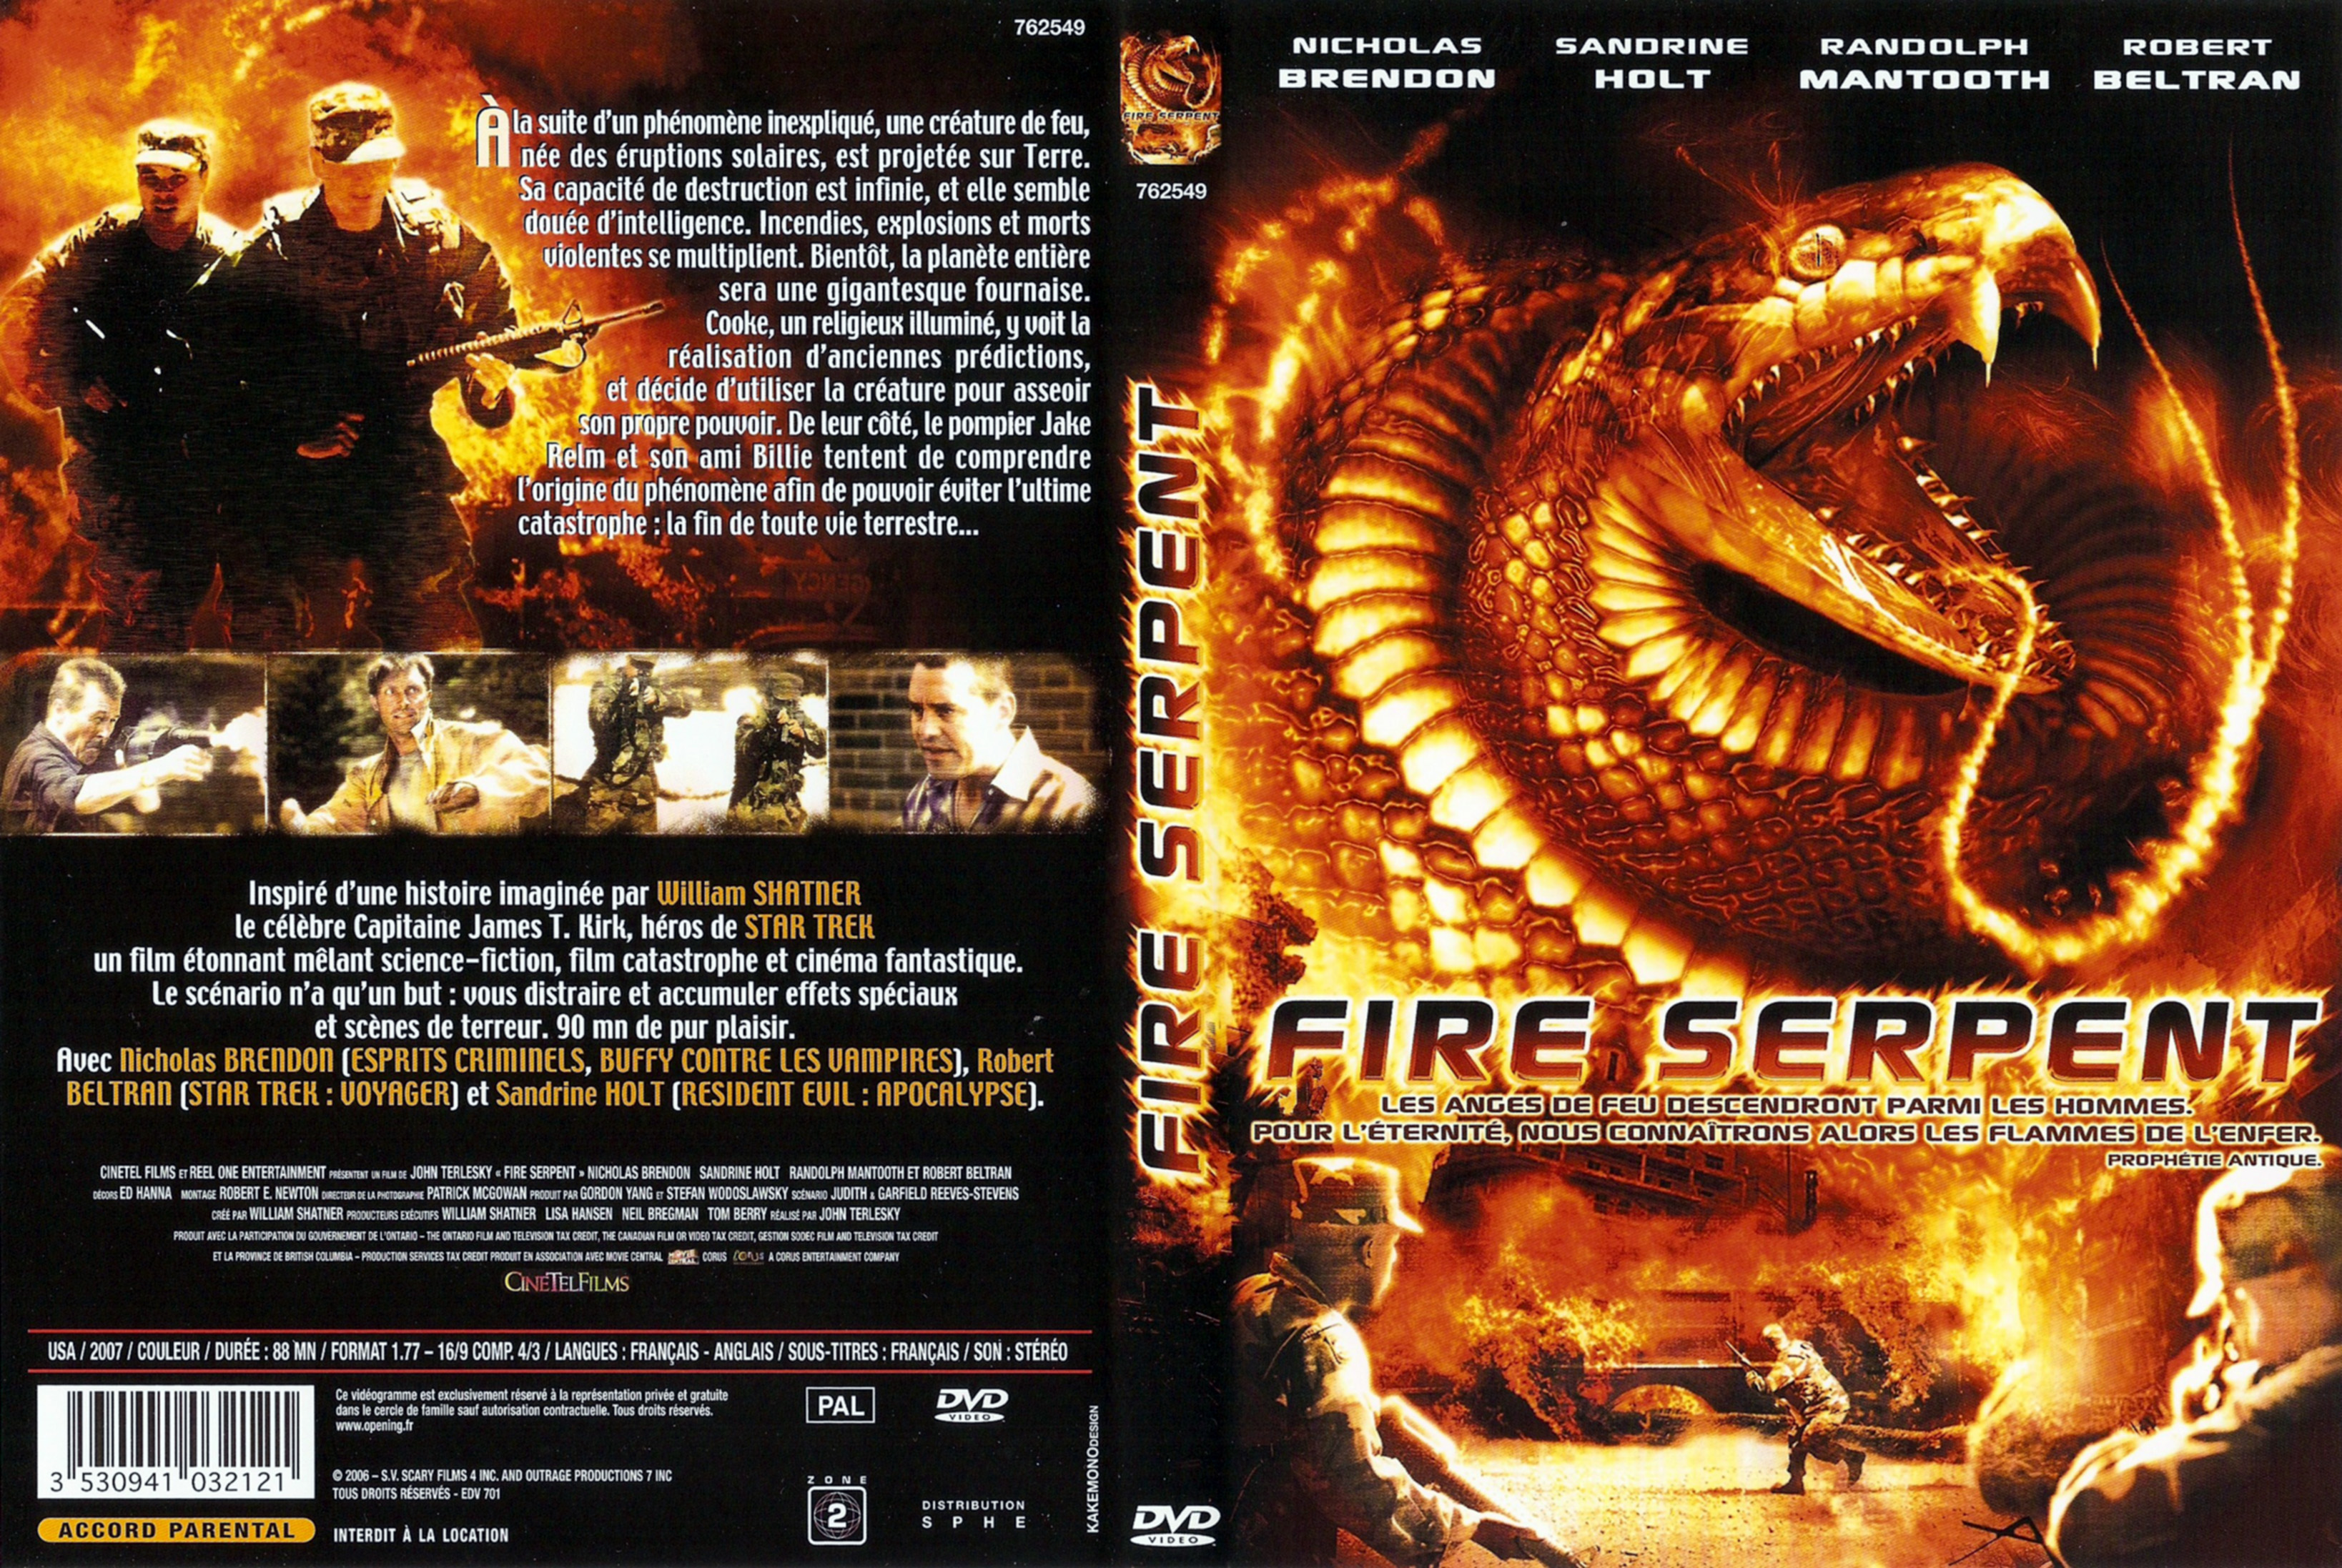 Jaquette DVD Fire Serpent